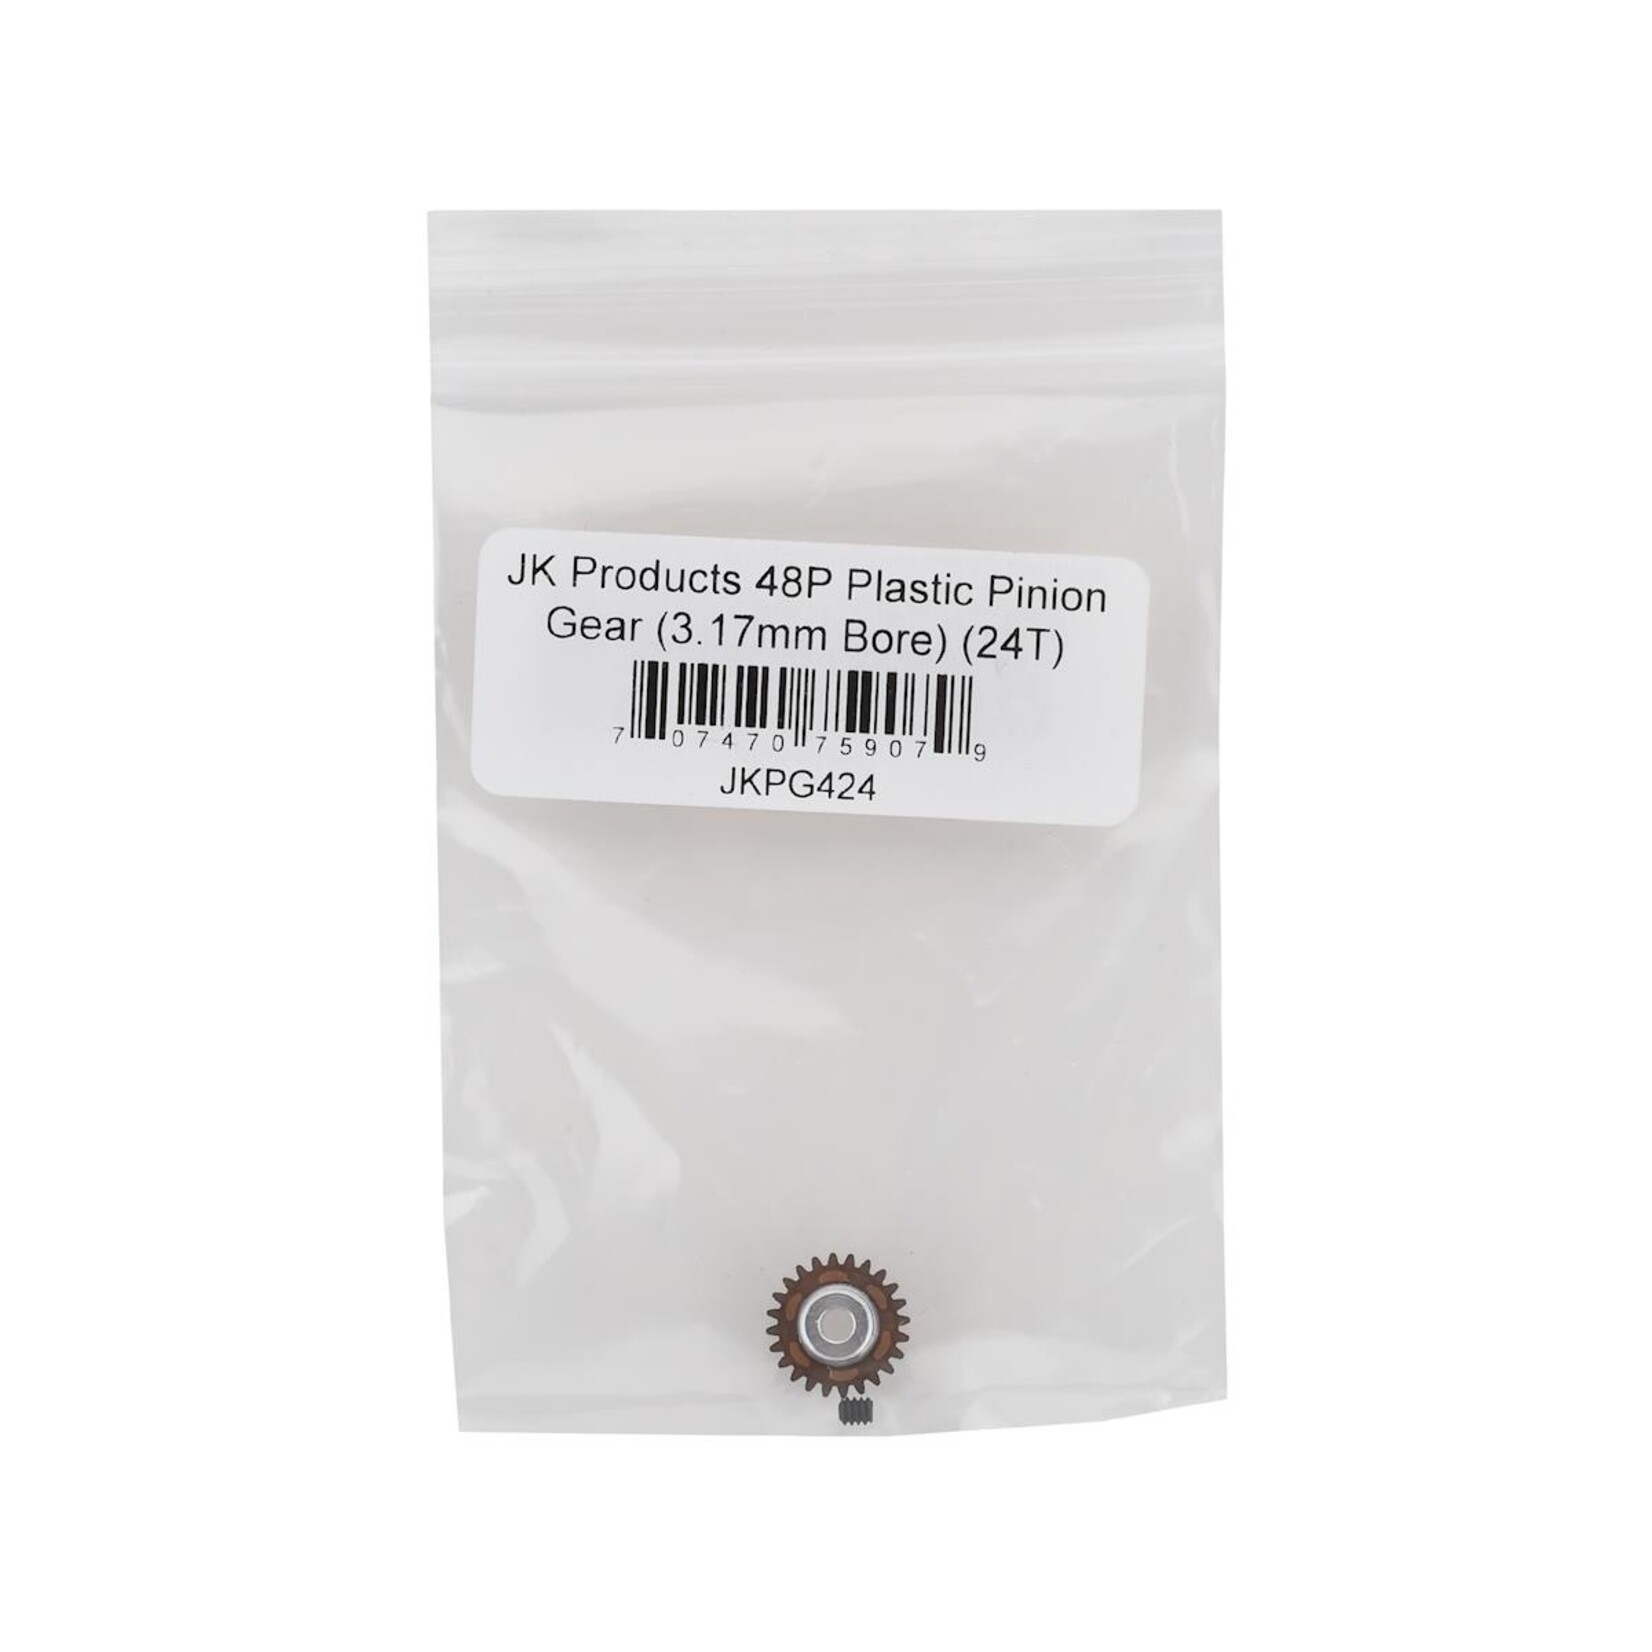 JK Products JK Products 48P Plastic Pinion Gear (3.17mm Bore) (24T) #JKPG424